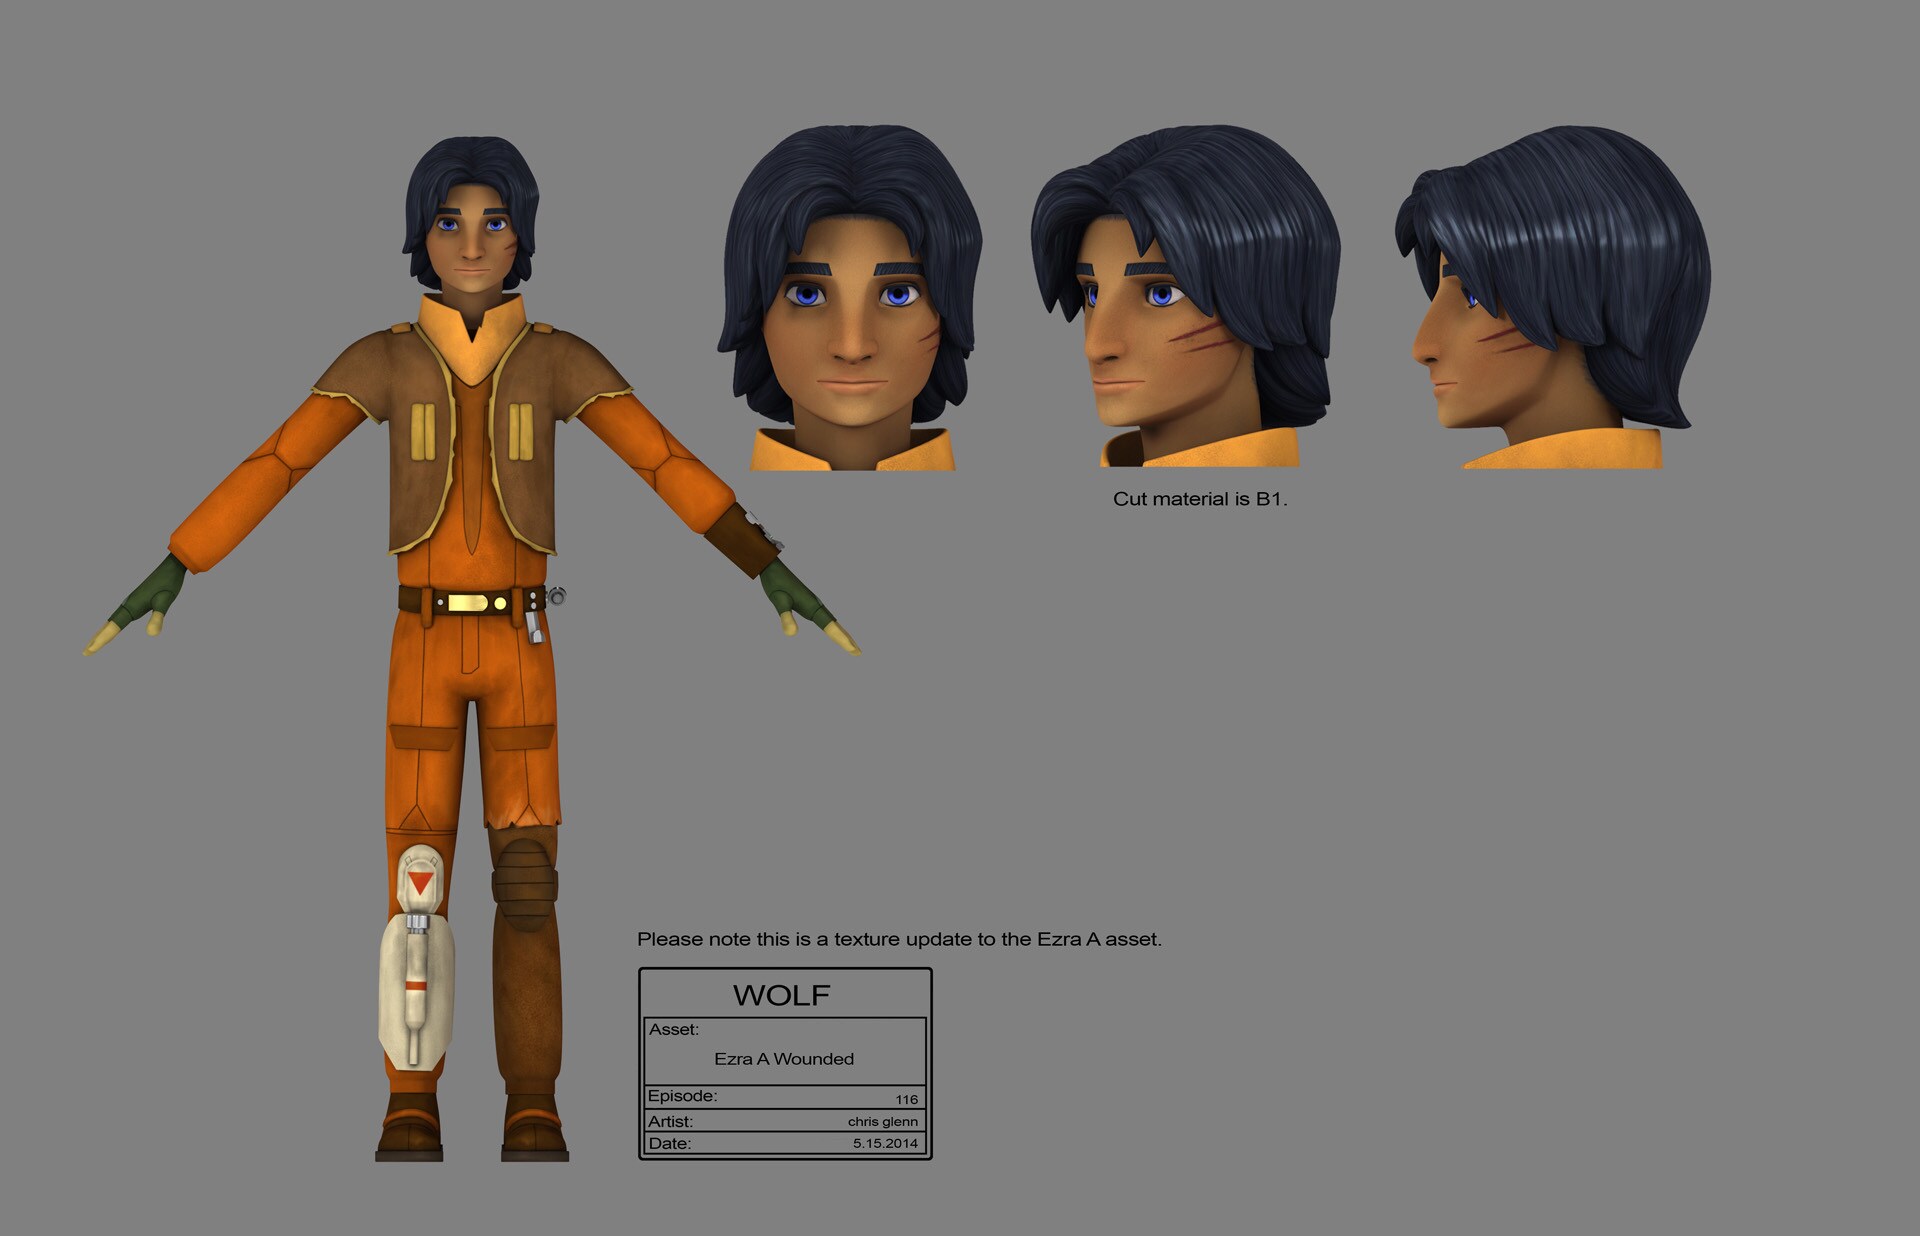 Ezra (with lightsaber scar) full character illustration by Chris Glenn.